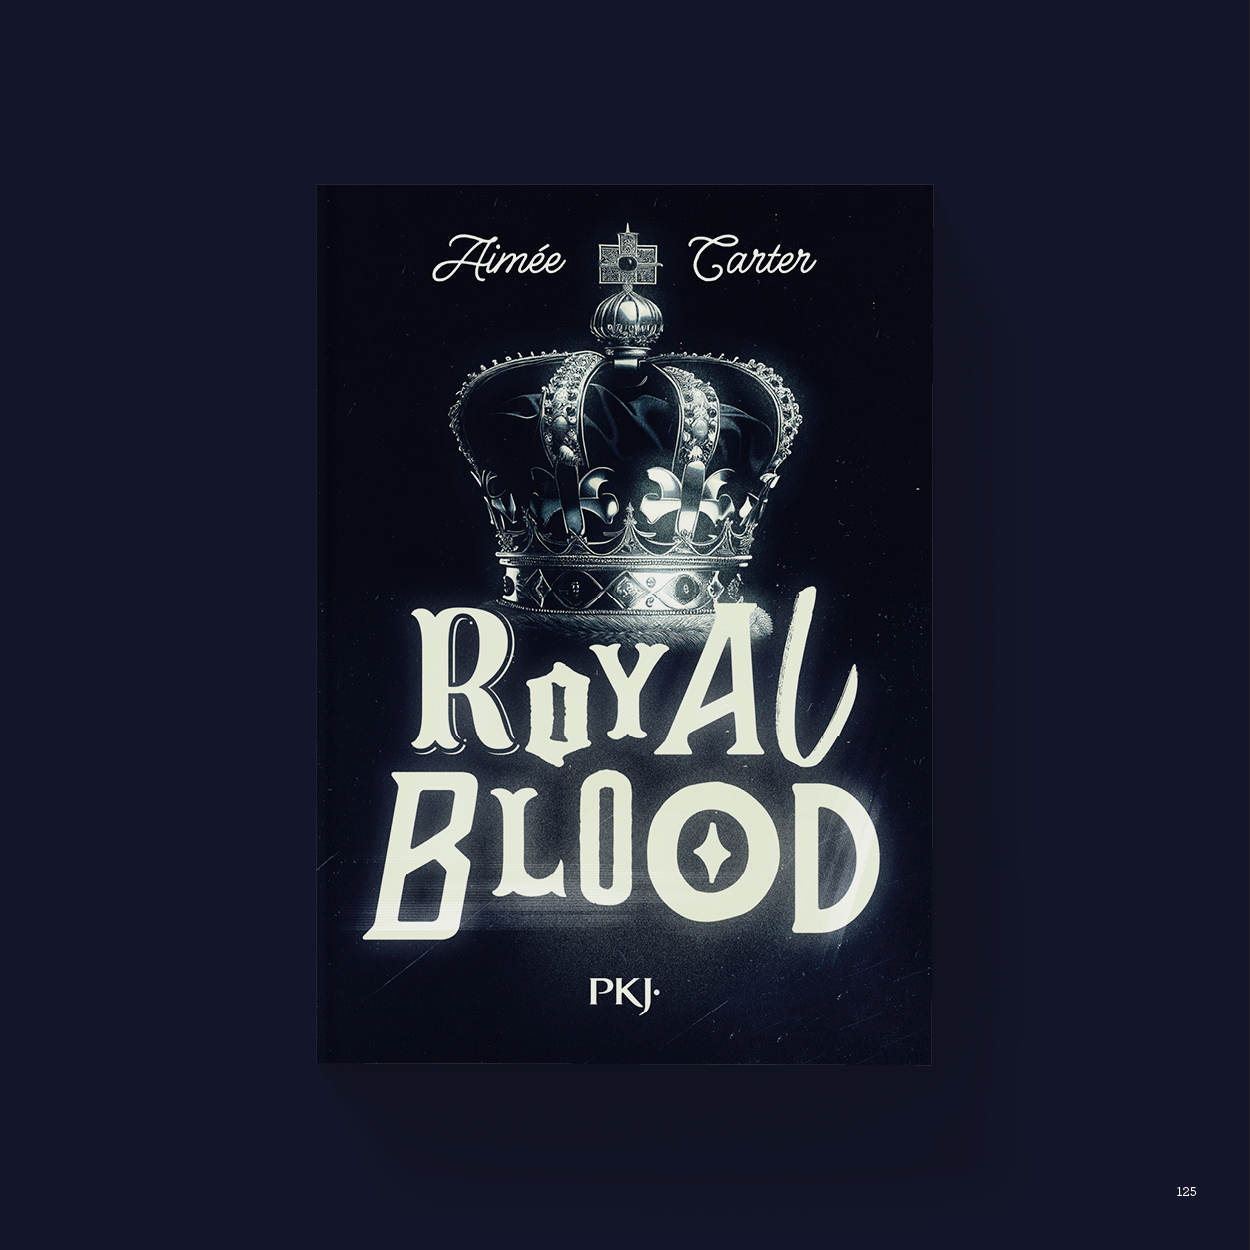 Vue_Royal_blood_125